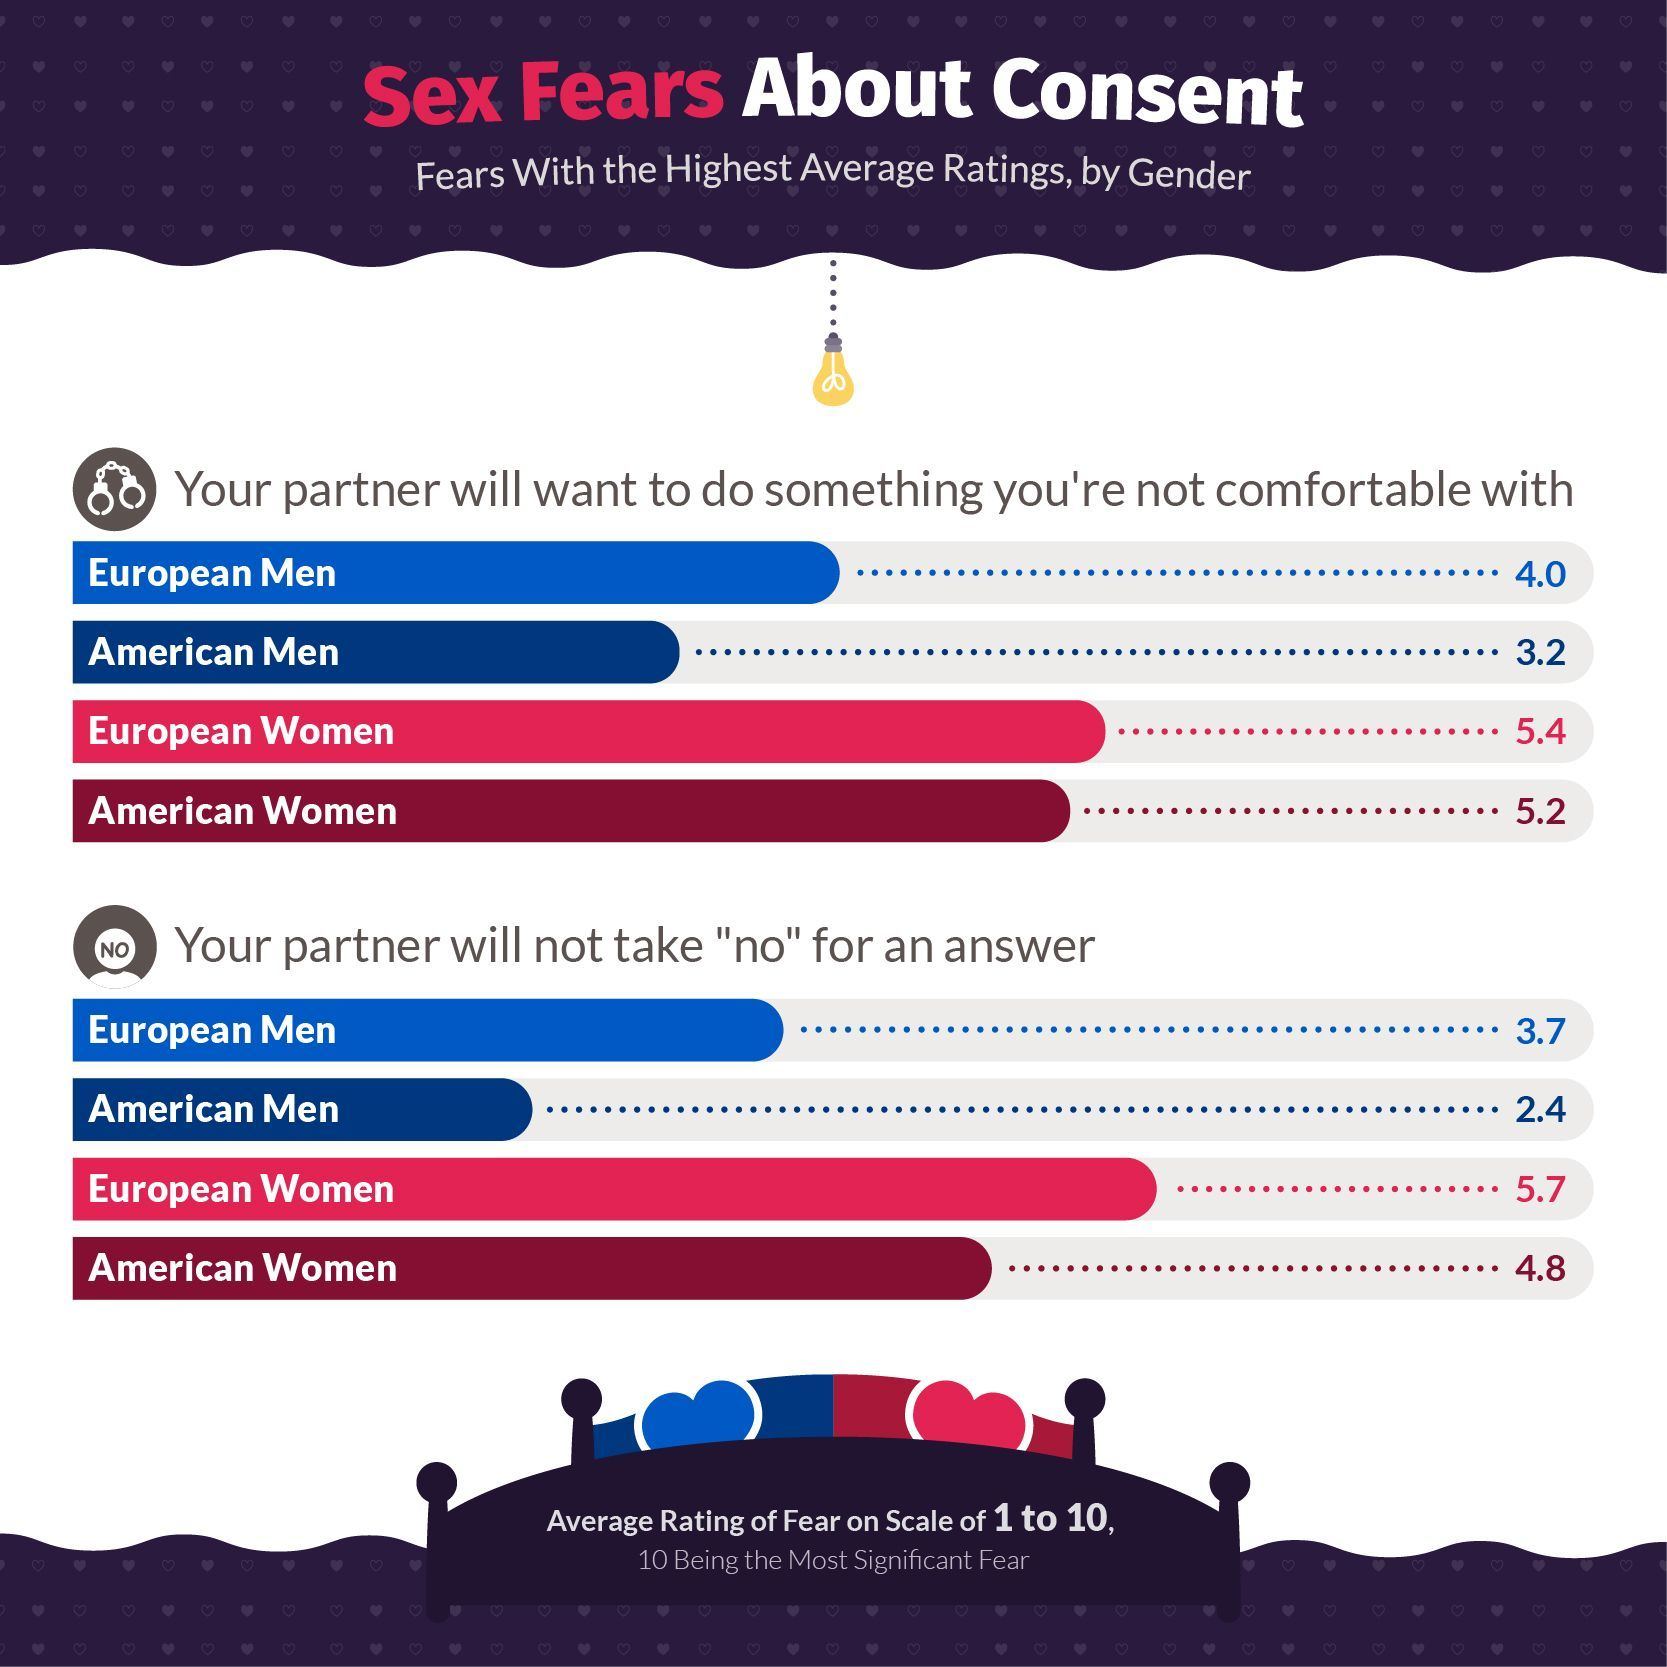 Insecurities surrounding sex